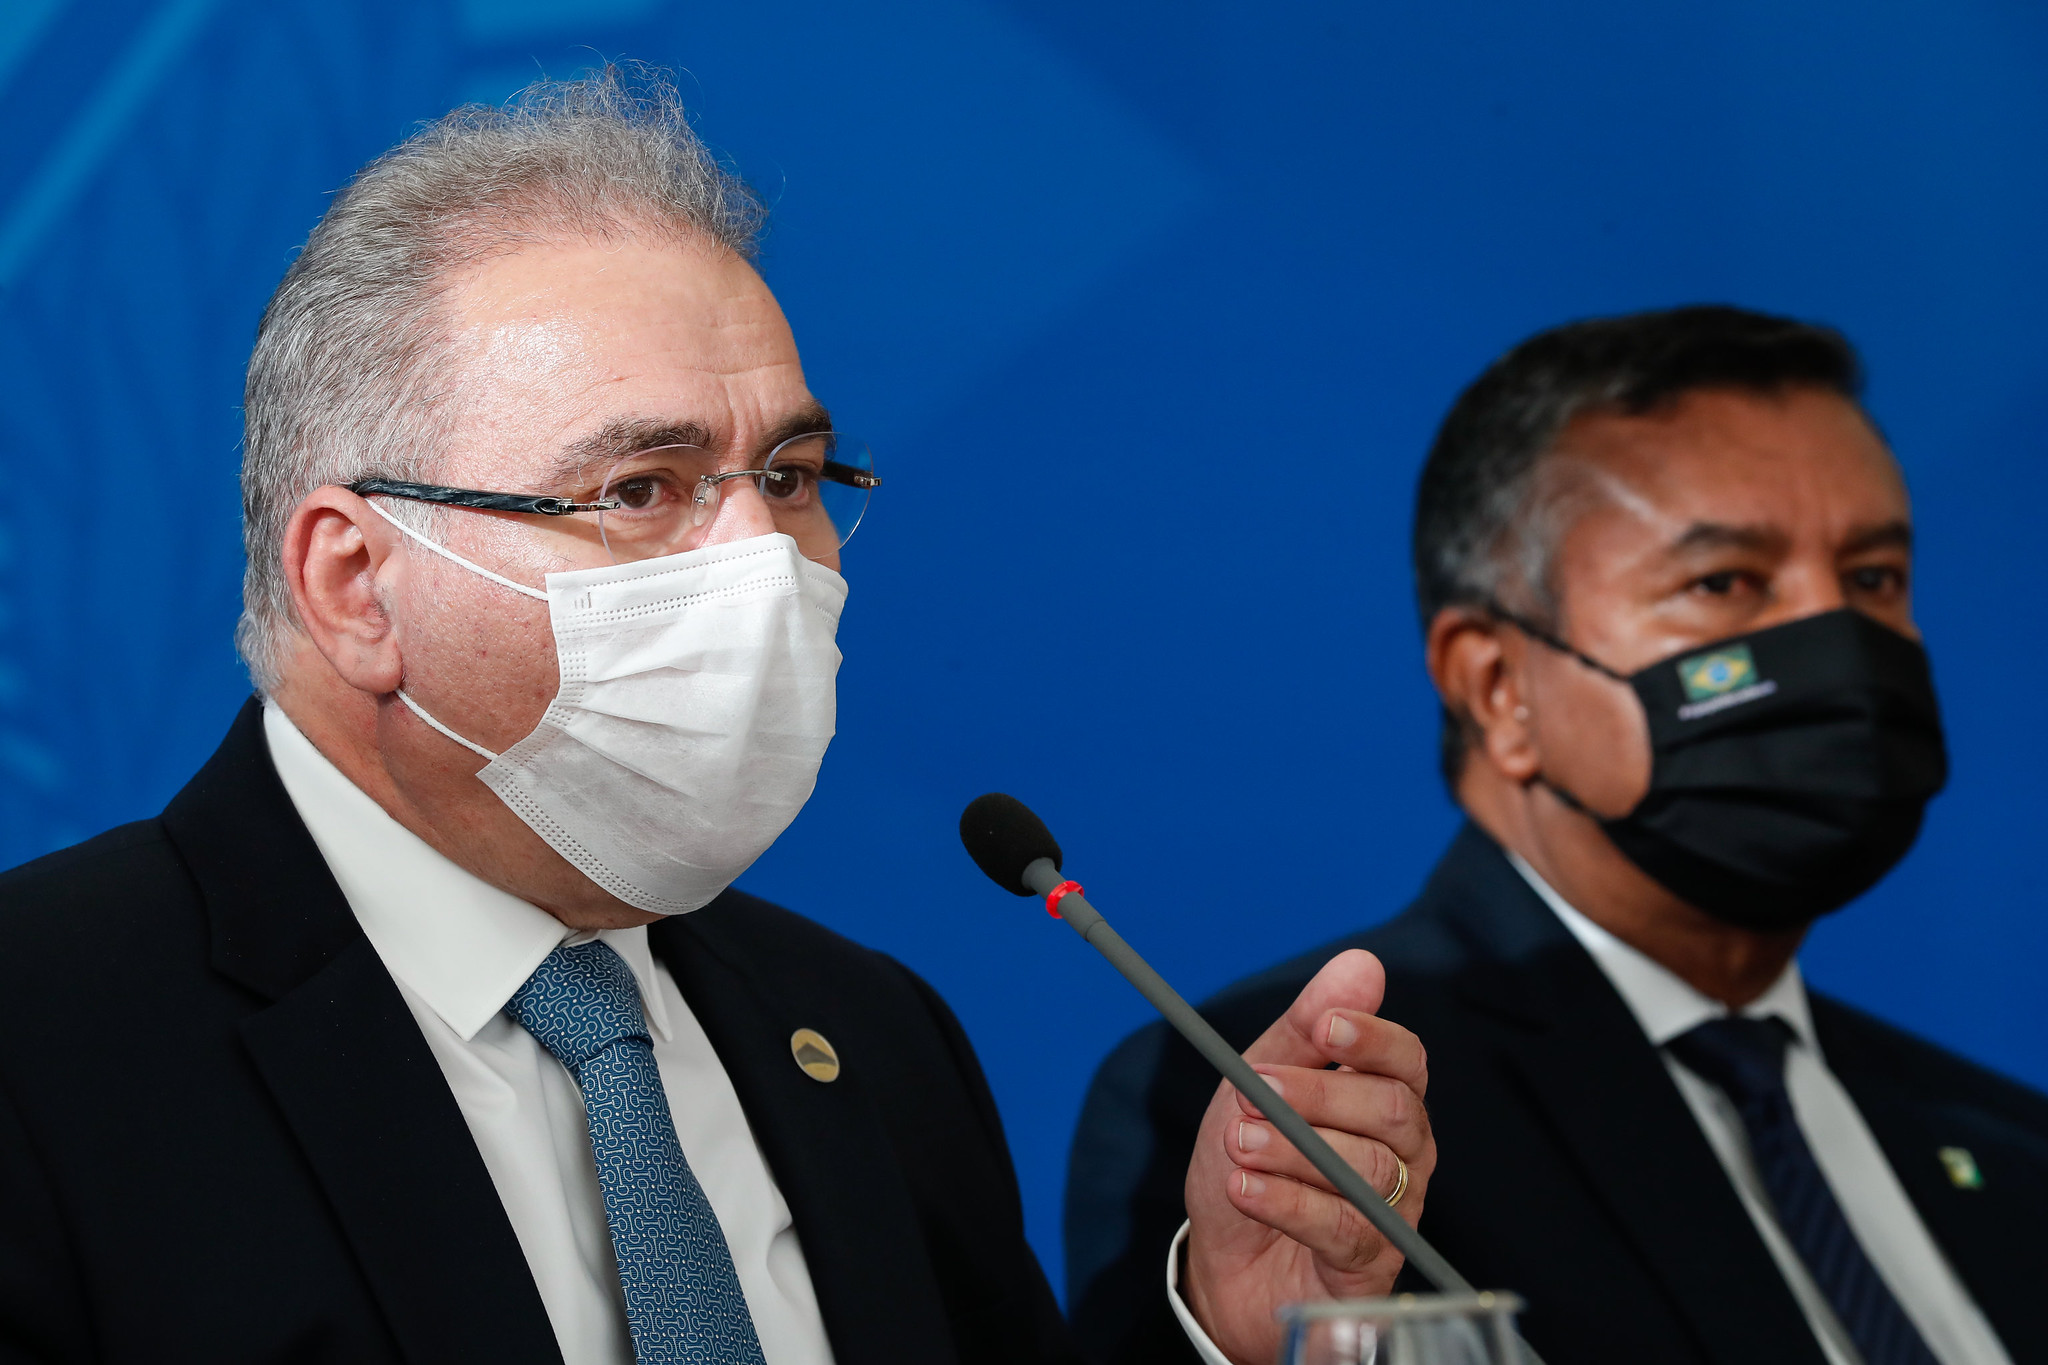 Coletiva de imprensa com o Ministro da Saúde, Marcelo Queiroga. (Foto: Alan Santos/PR)